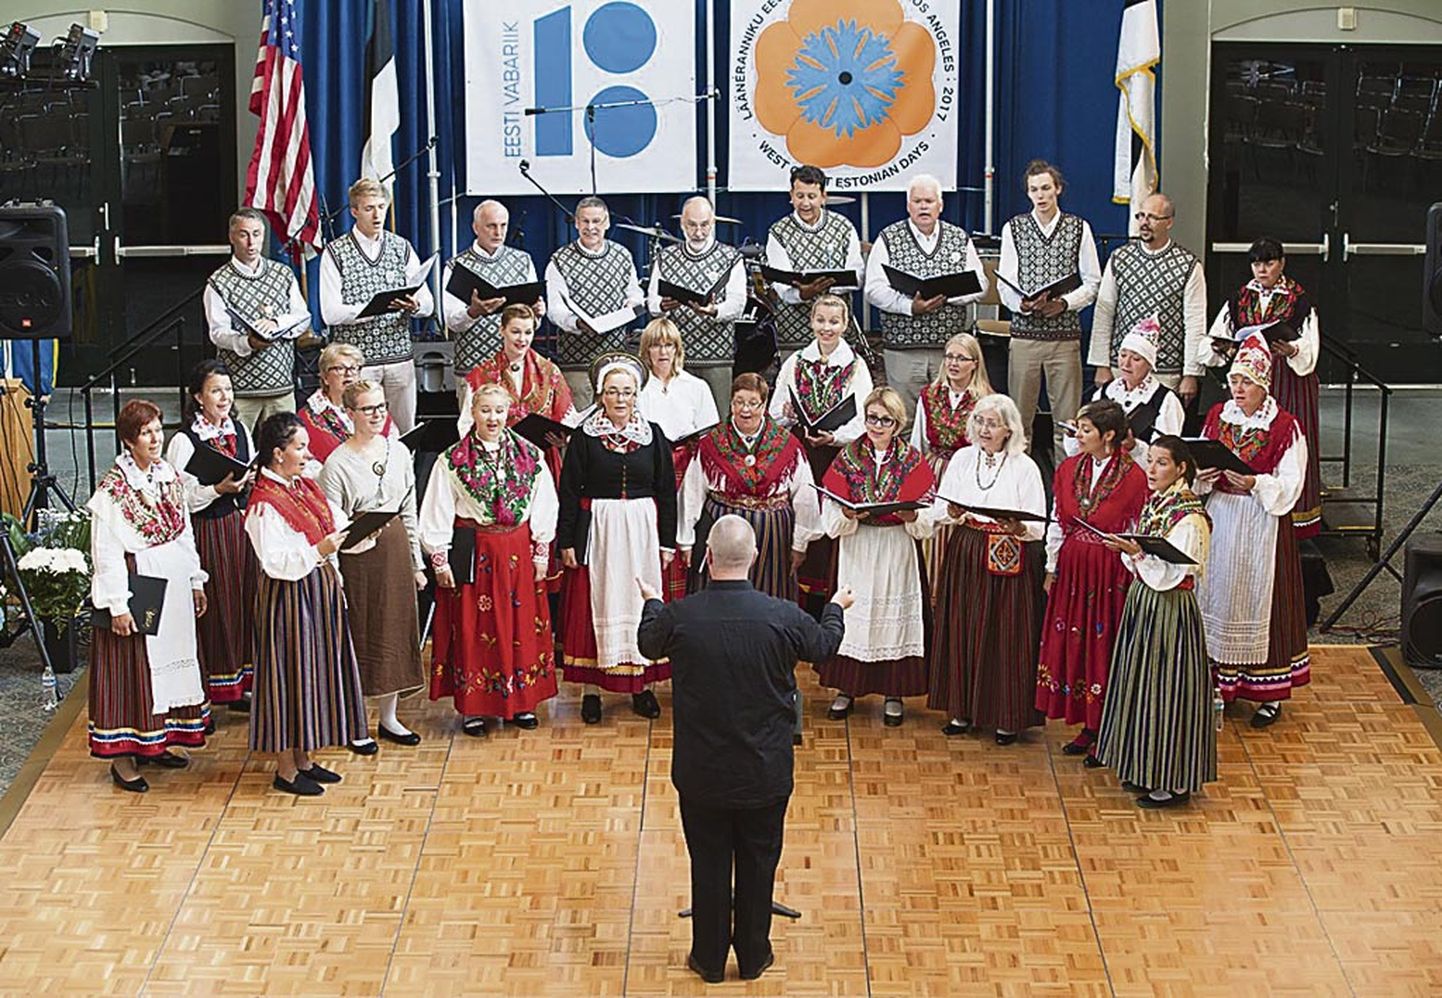 Segakoor Endla jätkab 1870. aastate keskel Pärnus eesti soost ärksamate meeste eestvõttel asutatud Endla laulu- ja mänguseltsi koori traditsiooni.